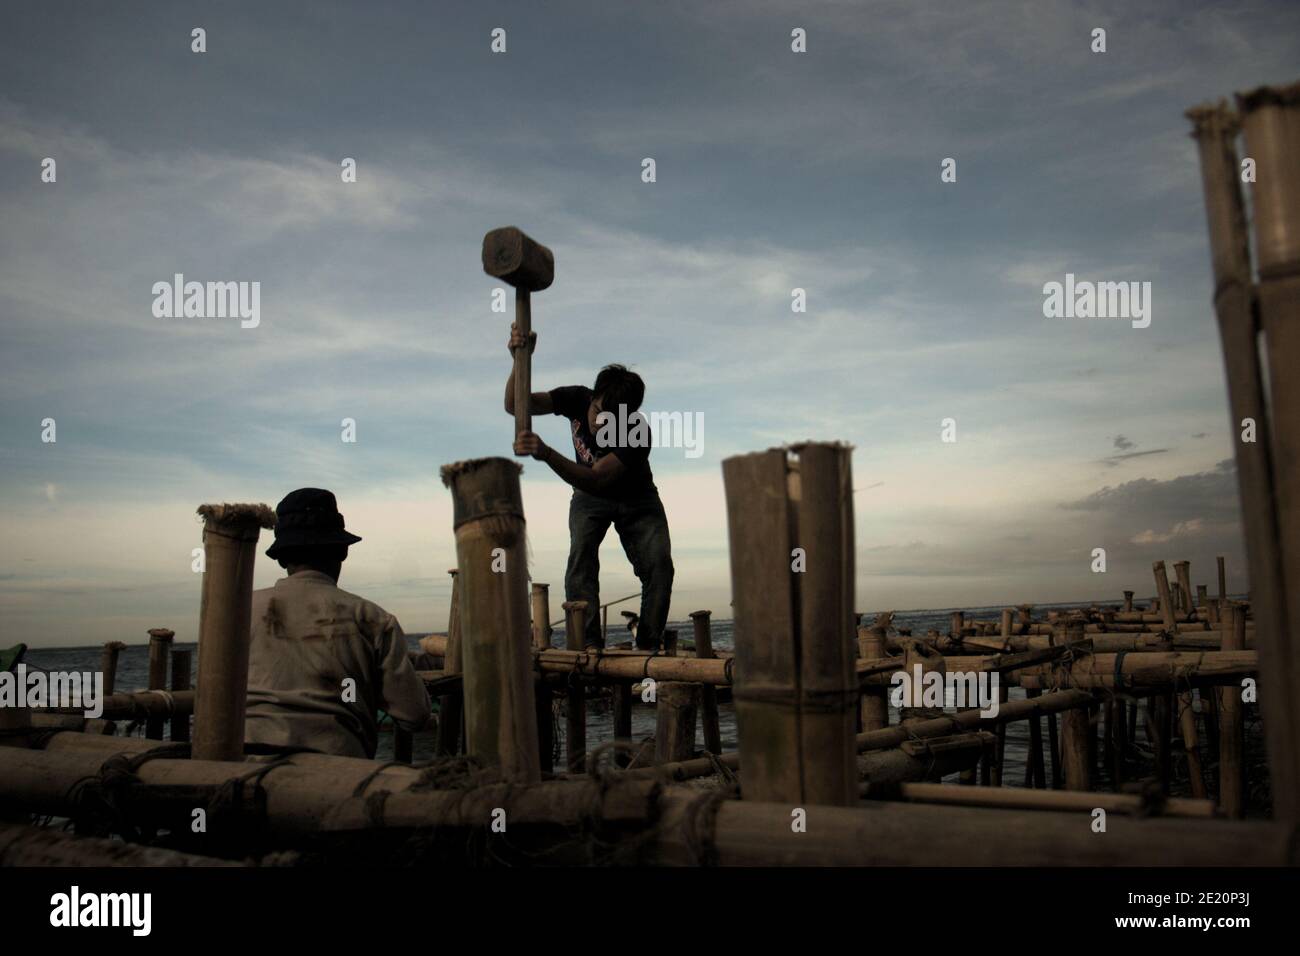 Des hommes construisent une structure côtière à l'aide de poteaux en bambou, un bâtiment à pilotis au-dessus de l'eau de mer dans le village de pêcheurs de Cilincing, sur la zone côtière de Jakarta, en Indonésie. Photo d'archives (2008). Banque D'Images